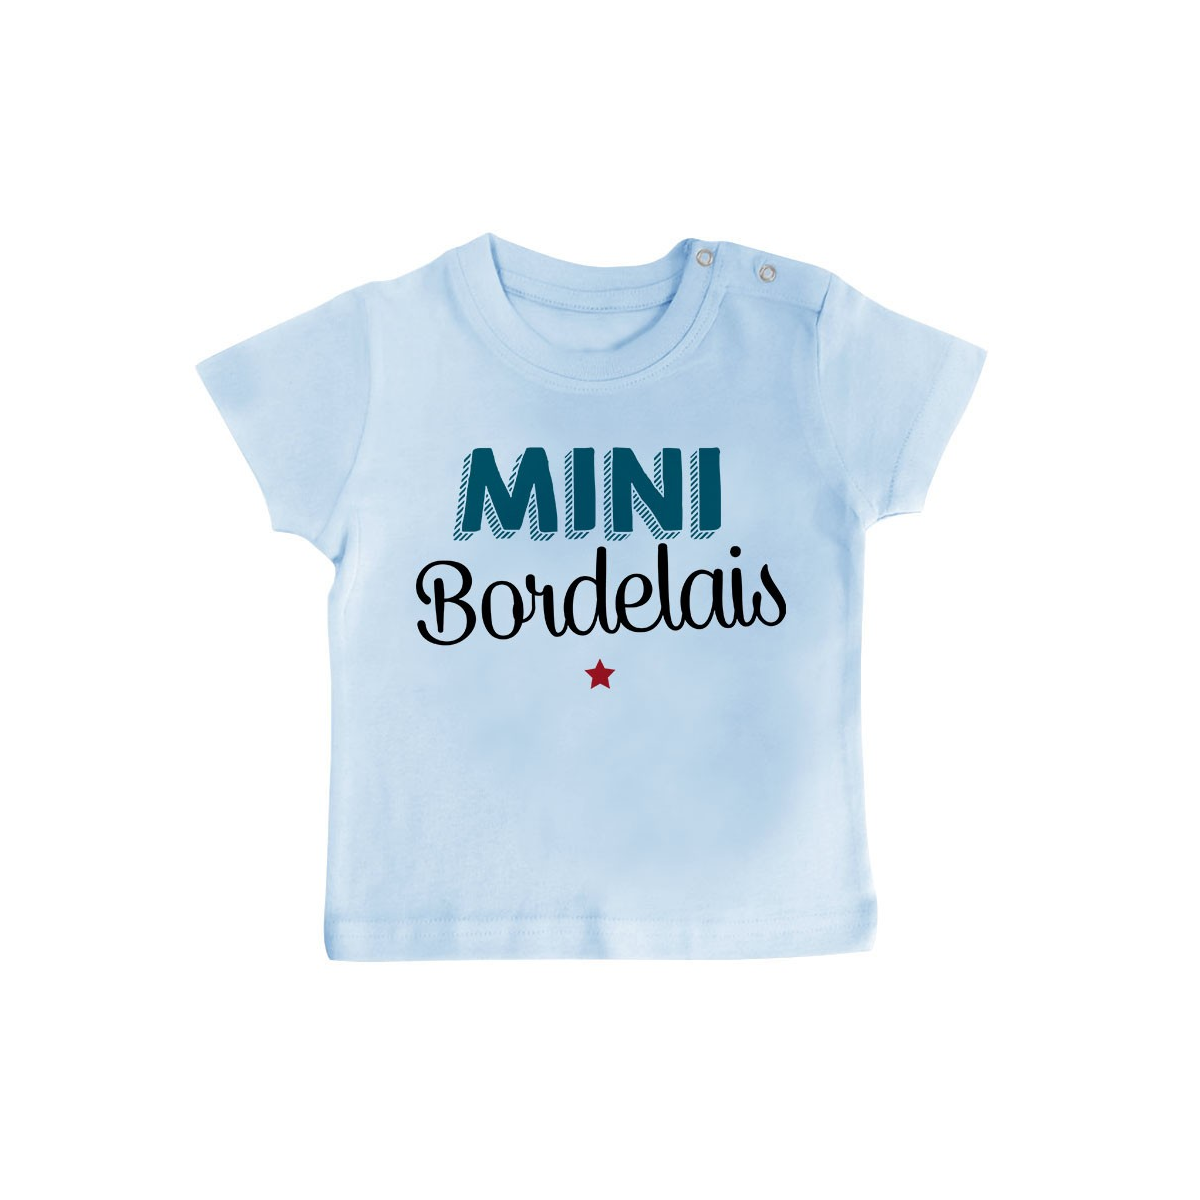 T-Shirt bébé Mini Bordelais